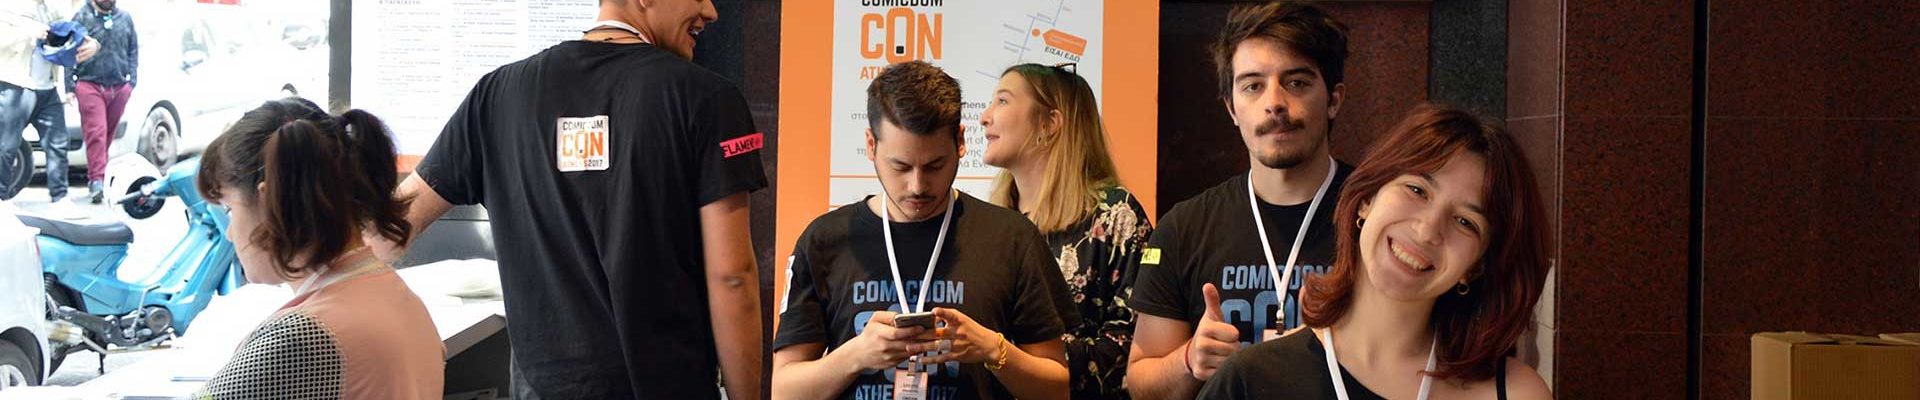 Comicdom Con Athens 2017 Photo Extravaganza